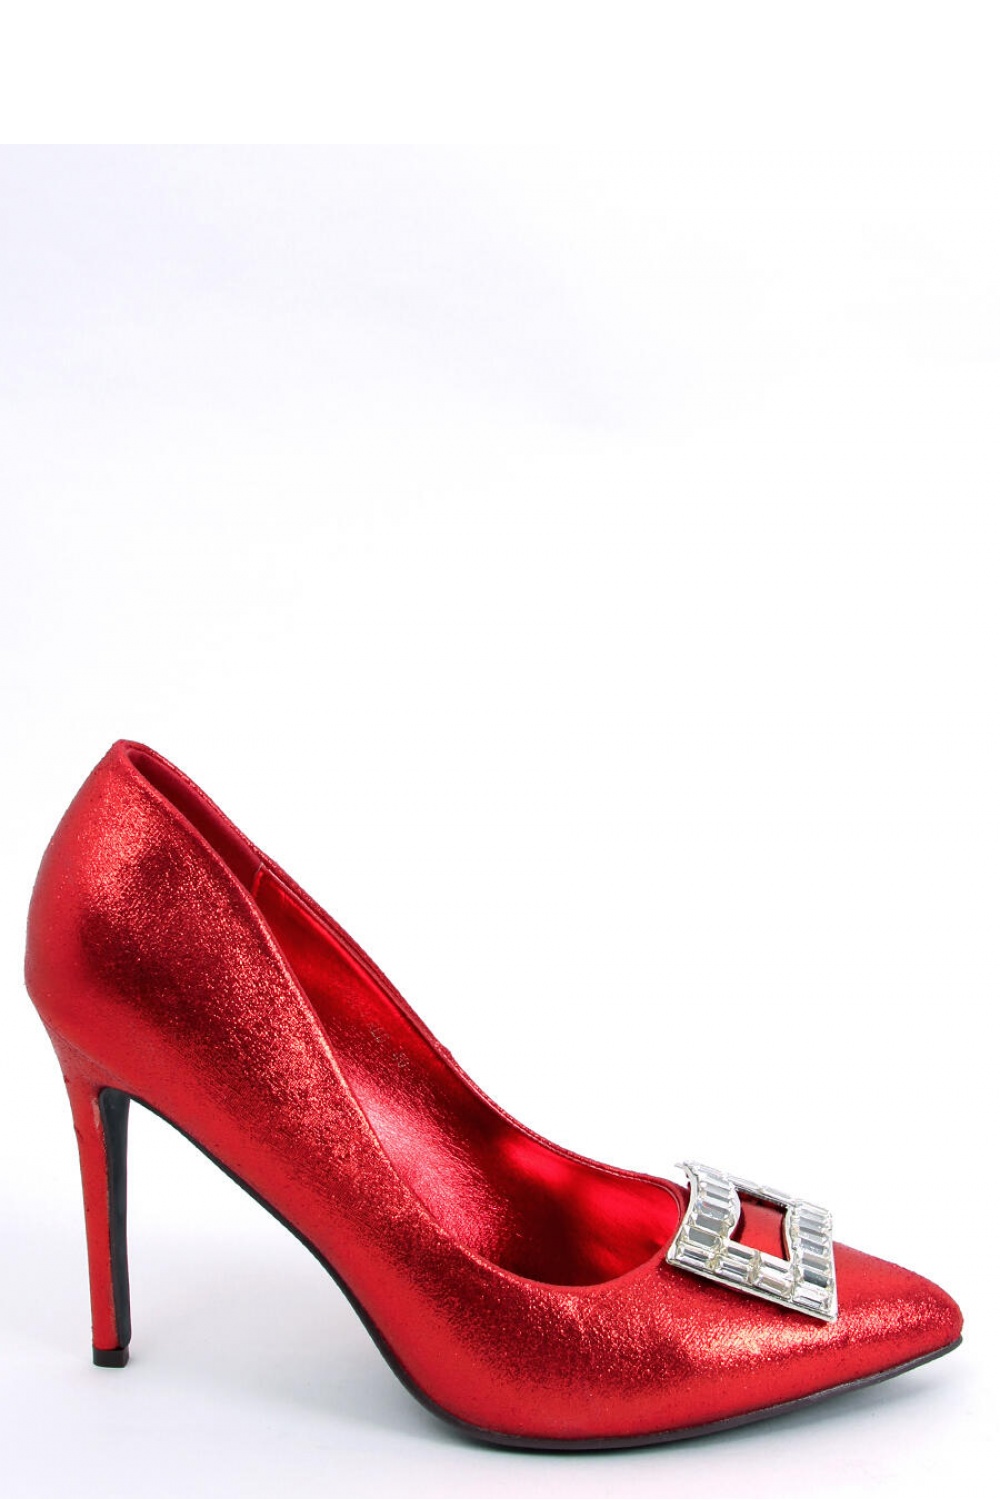 High heels model 174094 Inello